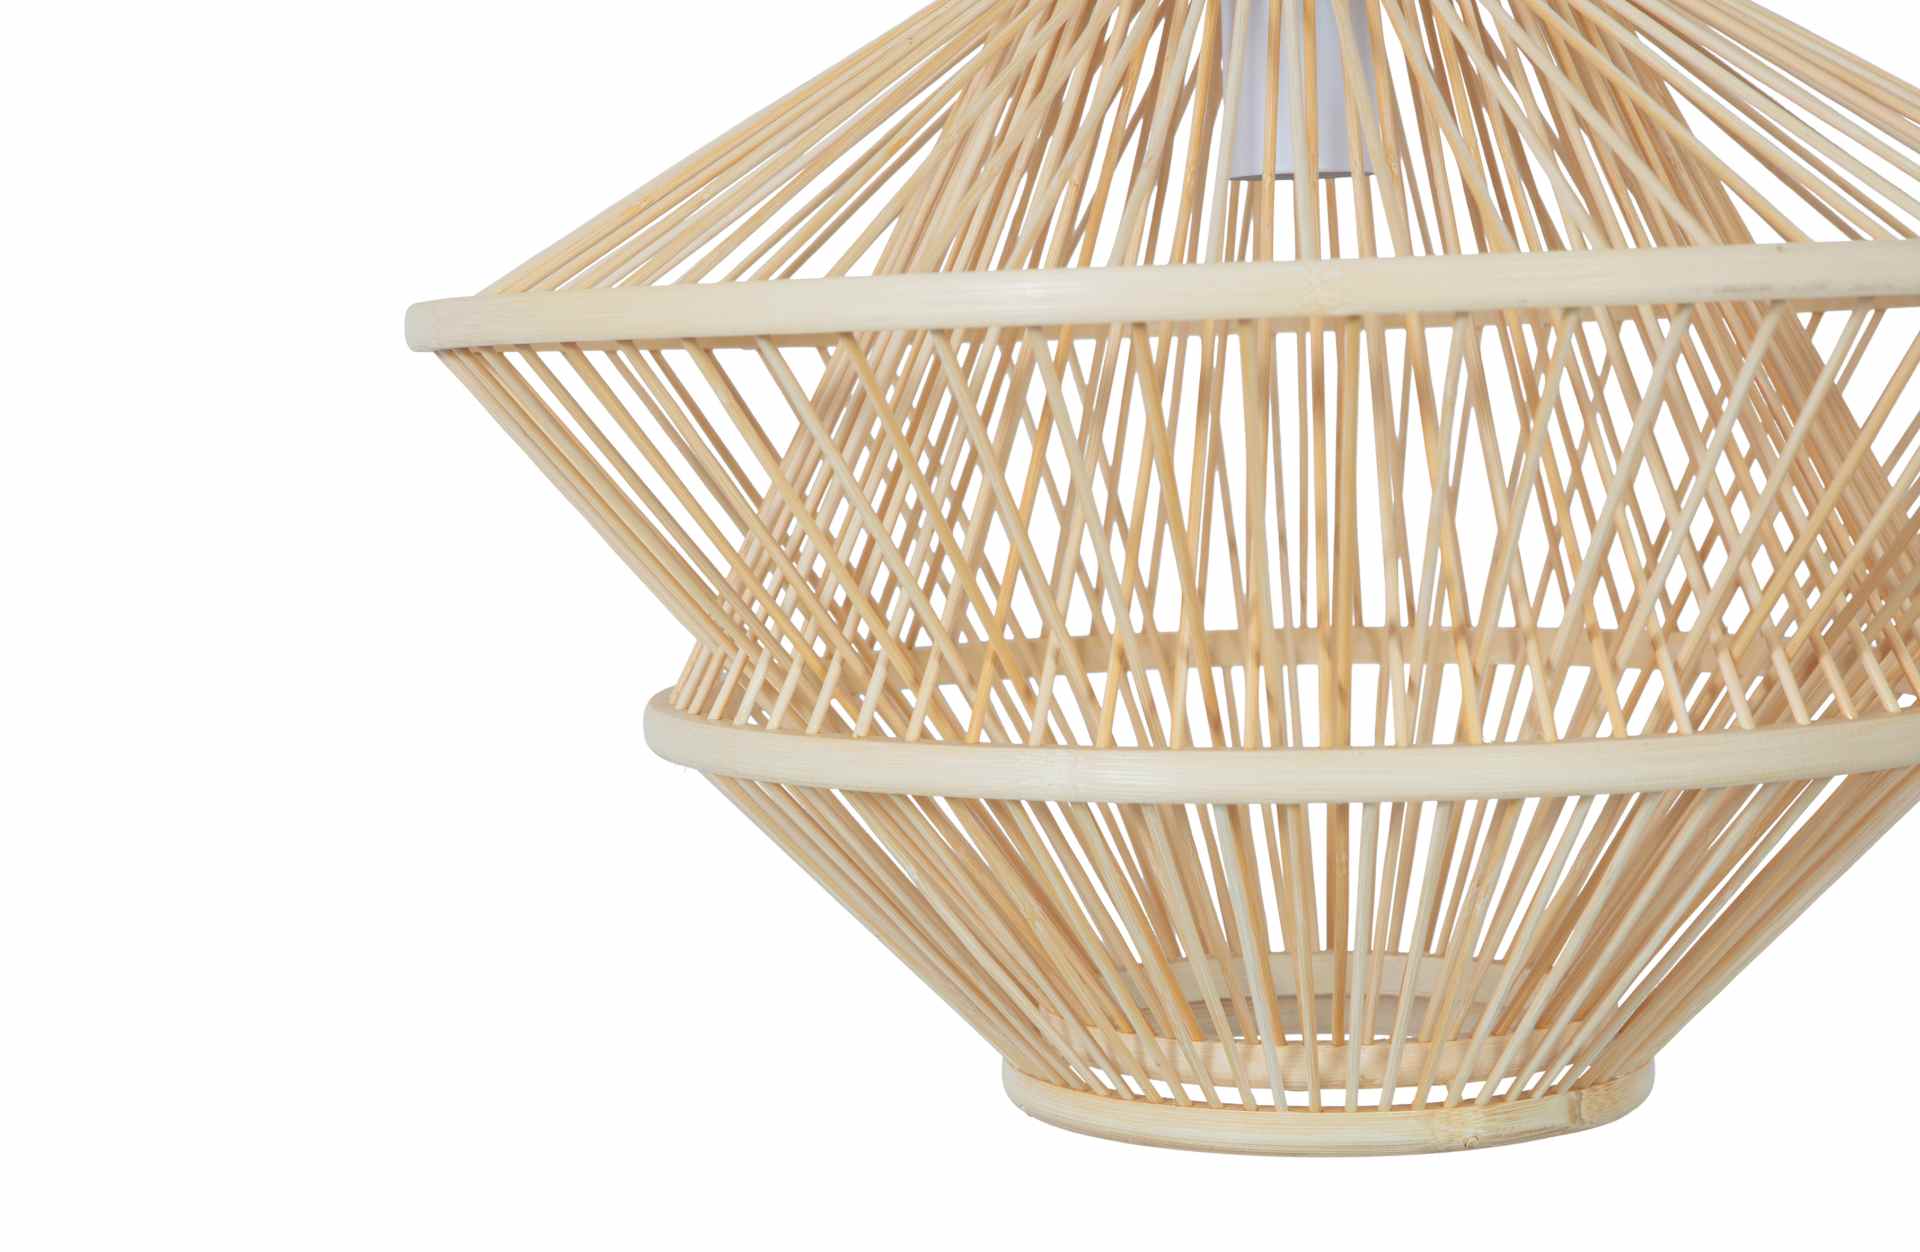 Die Hängelampe Bamboo überzeugt mit ihrem Boho Stil. Gefertigt wurde die Lampe aus Bambus, welches einen natürlichen Farbton besitzt.